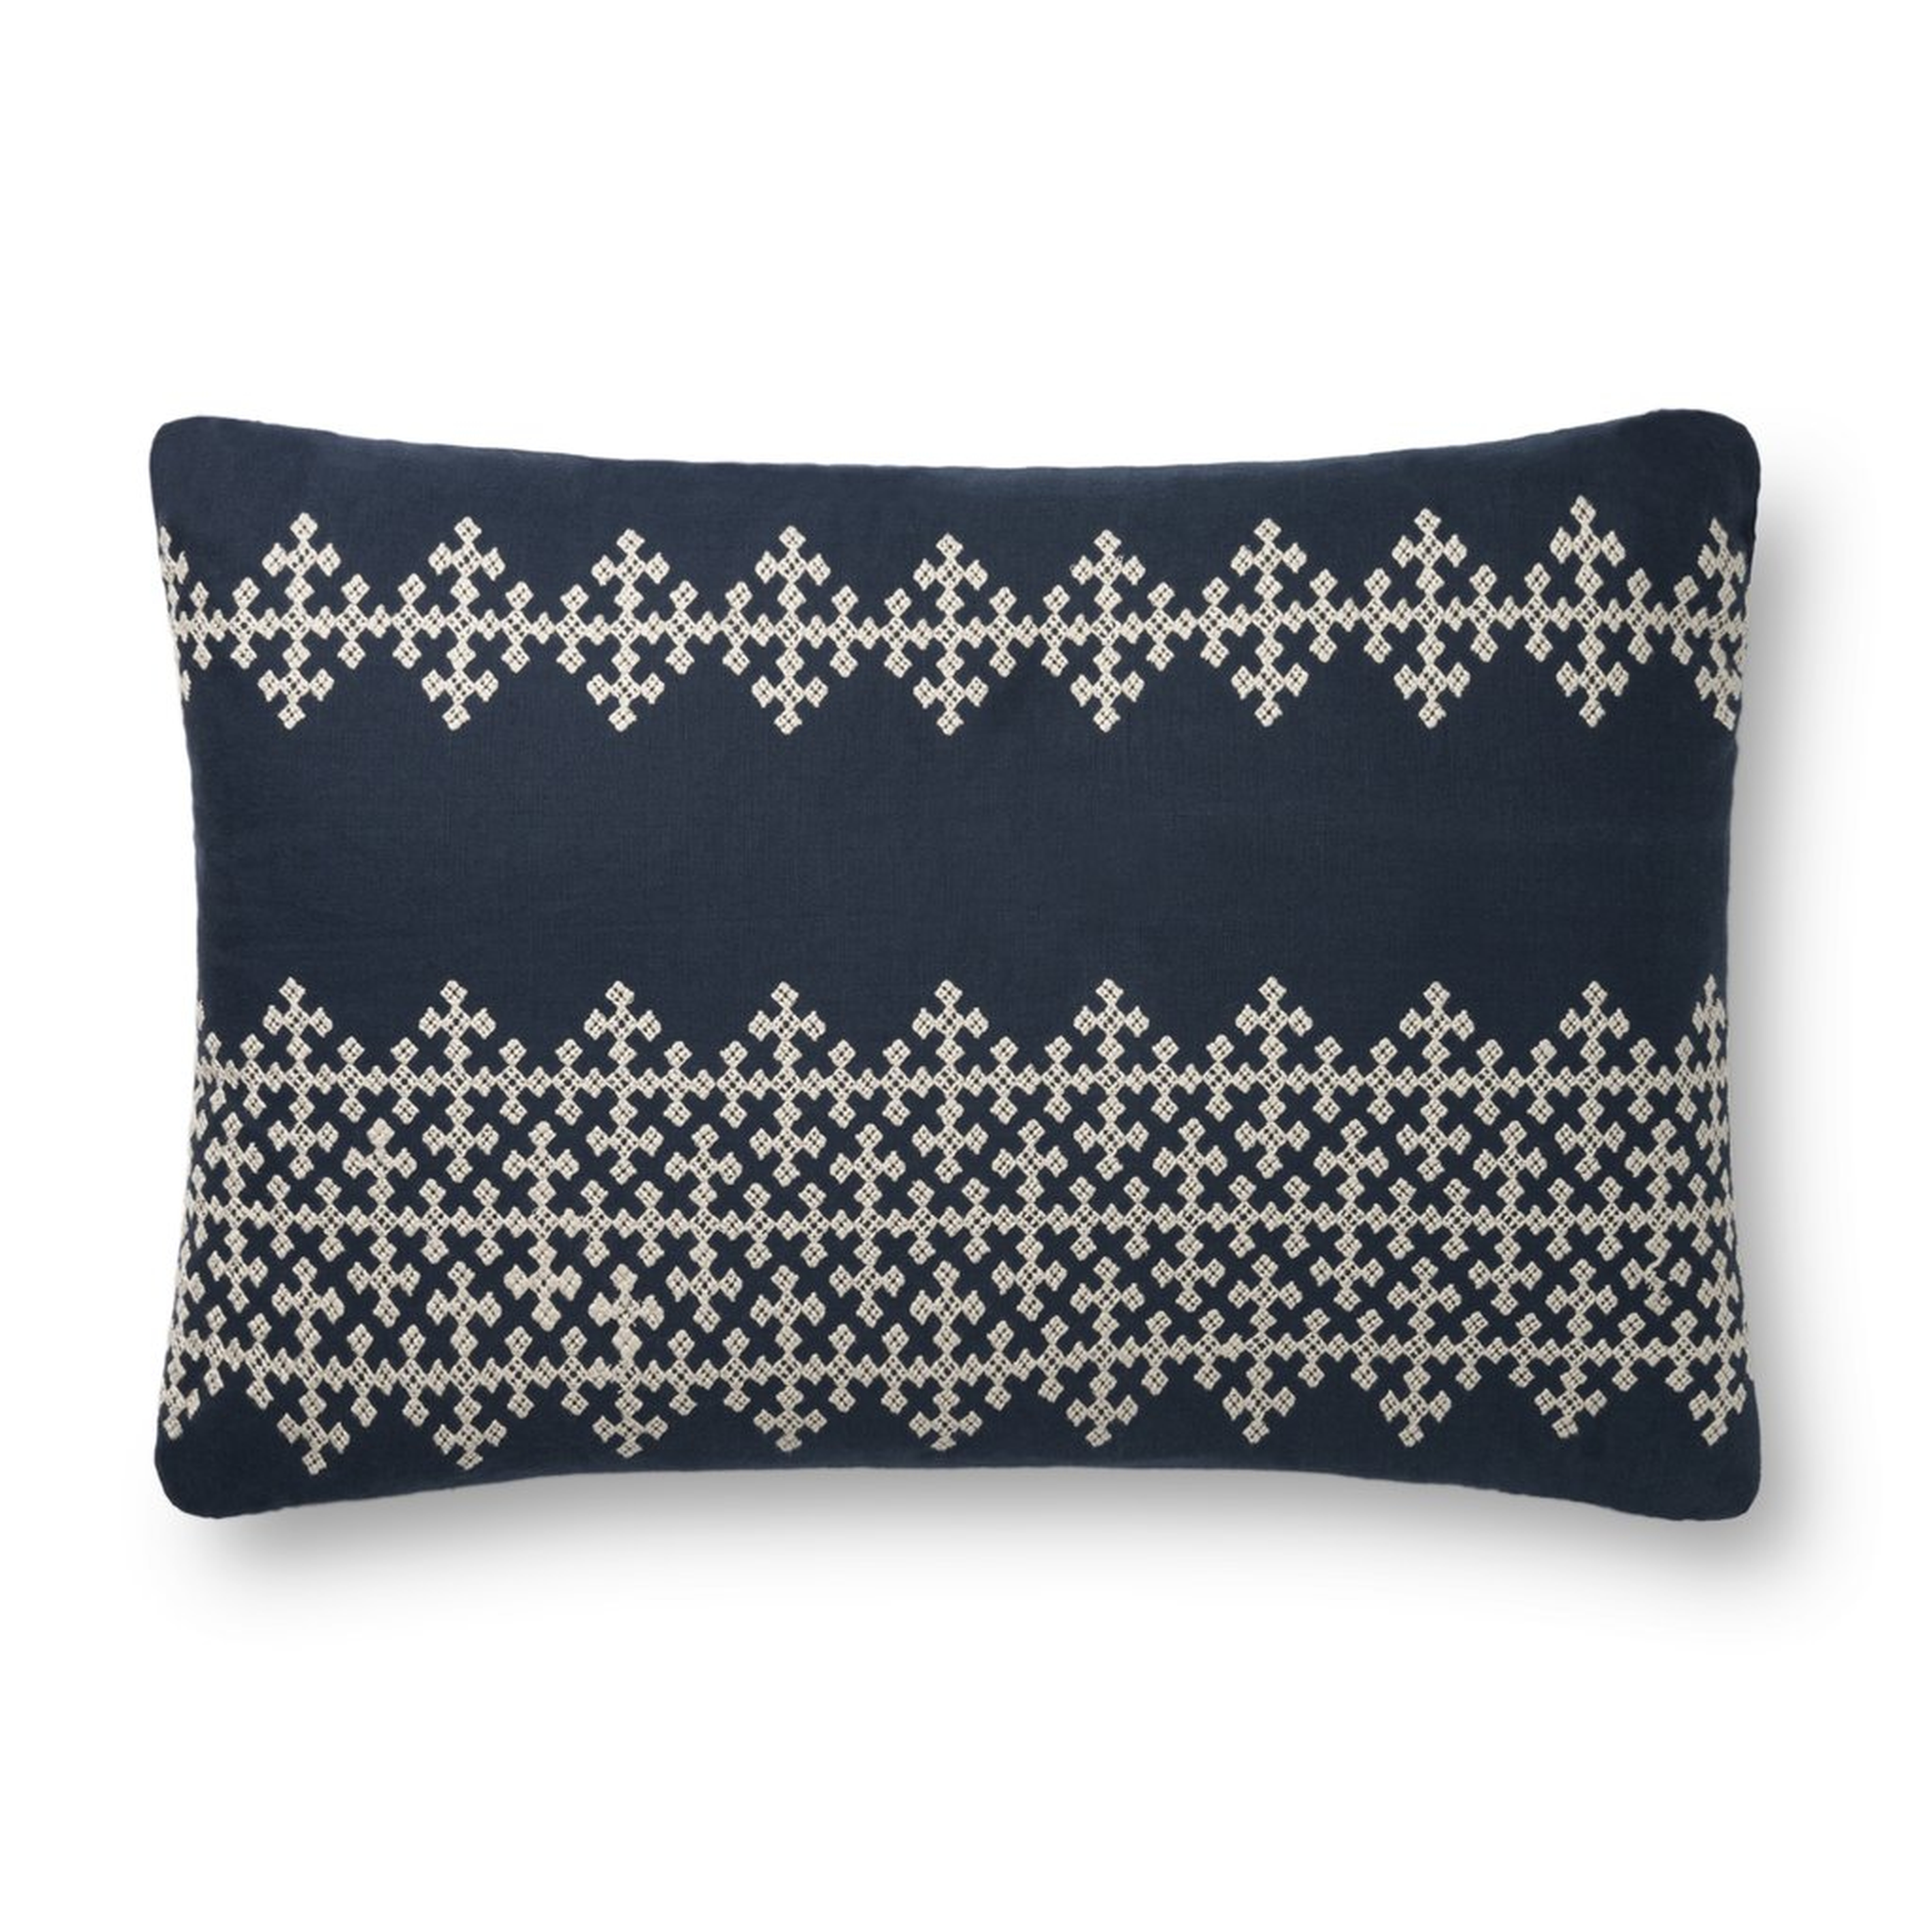 Lumbar Throw Pillow, 26" x 16", Navy Blue & Ivory - Loloi Rugs